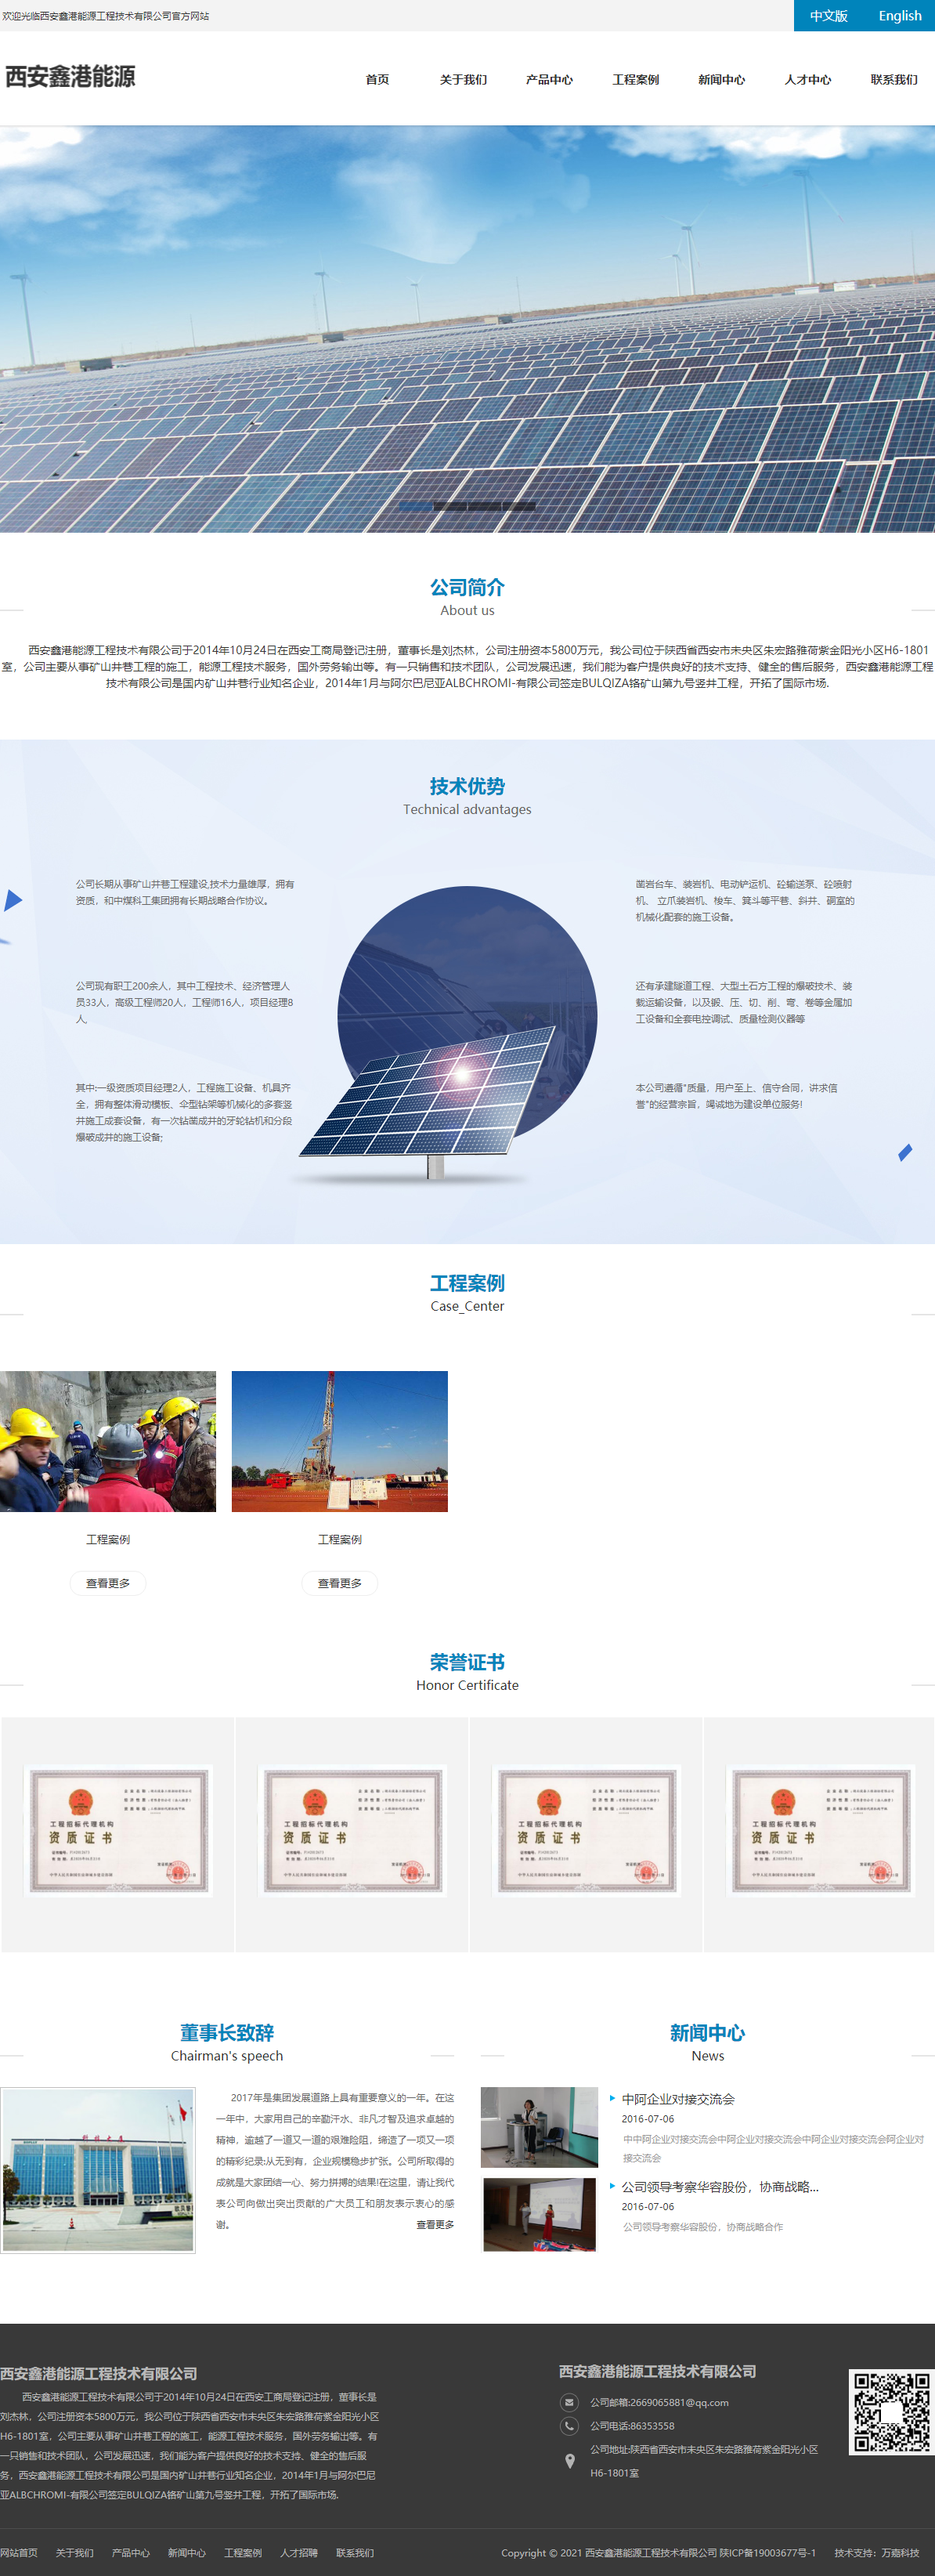 西安鑫港能源工程技术有限公司网站案例